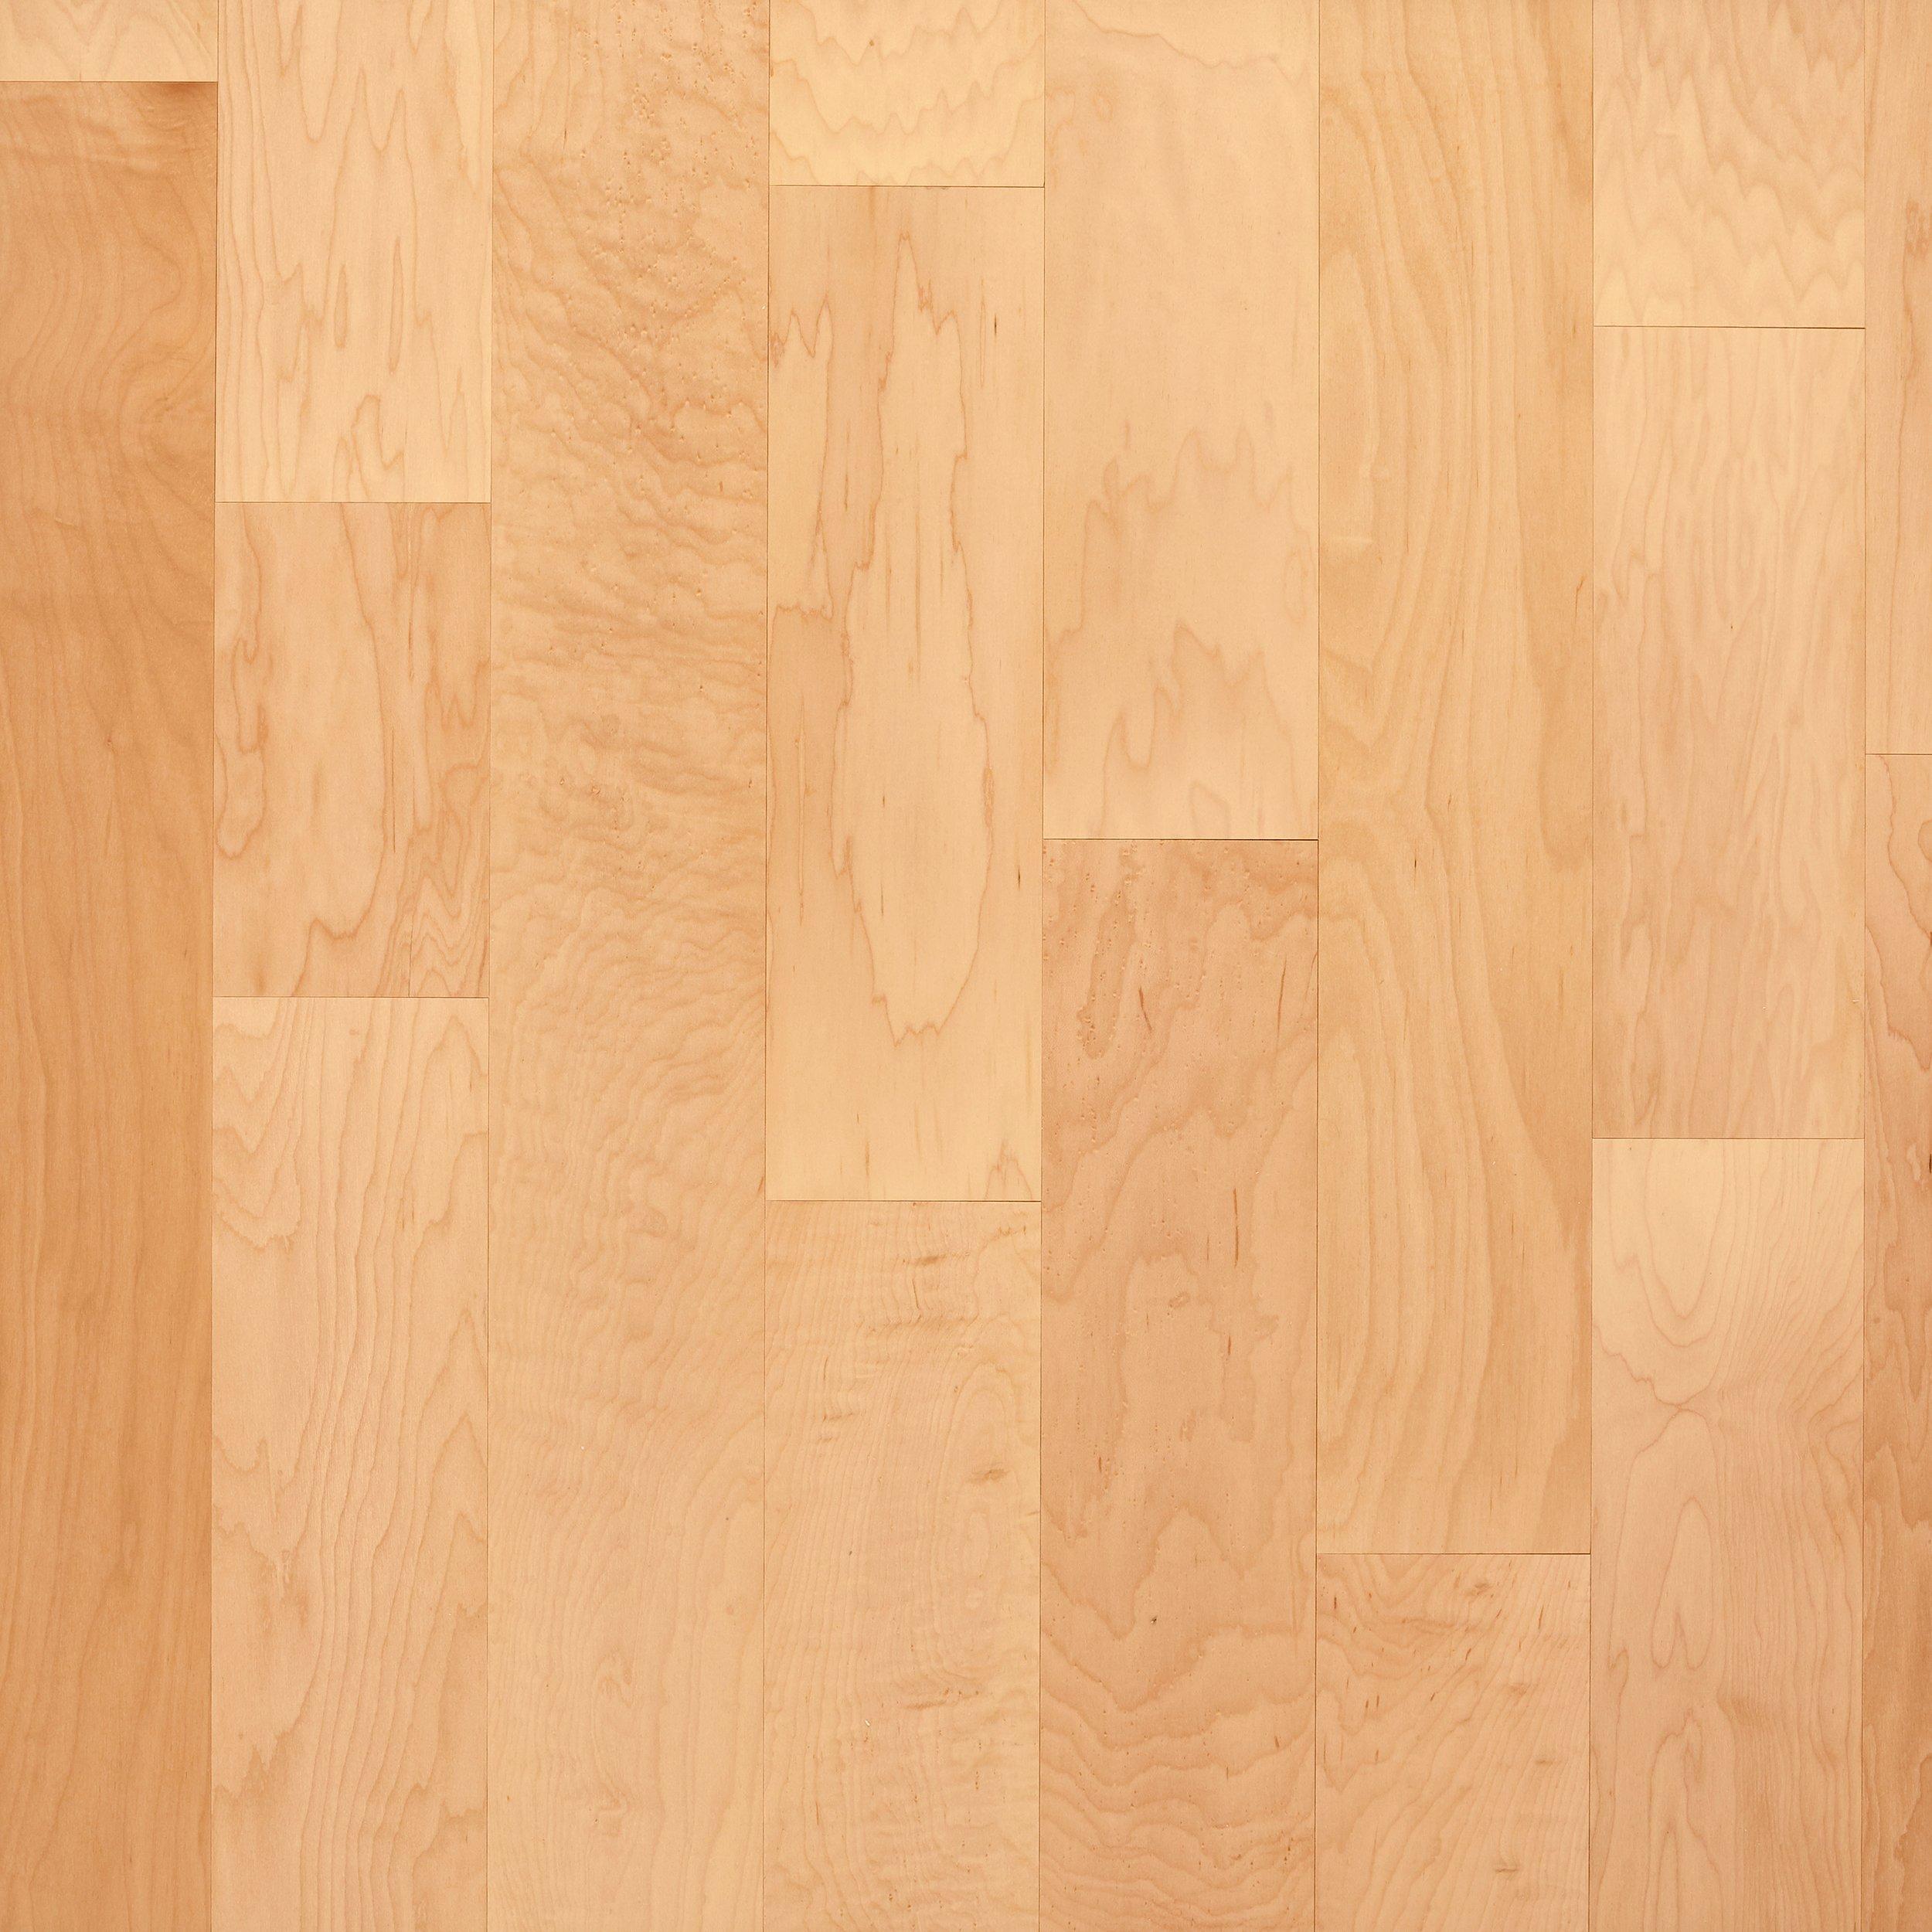 Premier Performance Maple Natural, Engineered Maple Hardwood Flooring